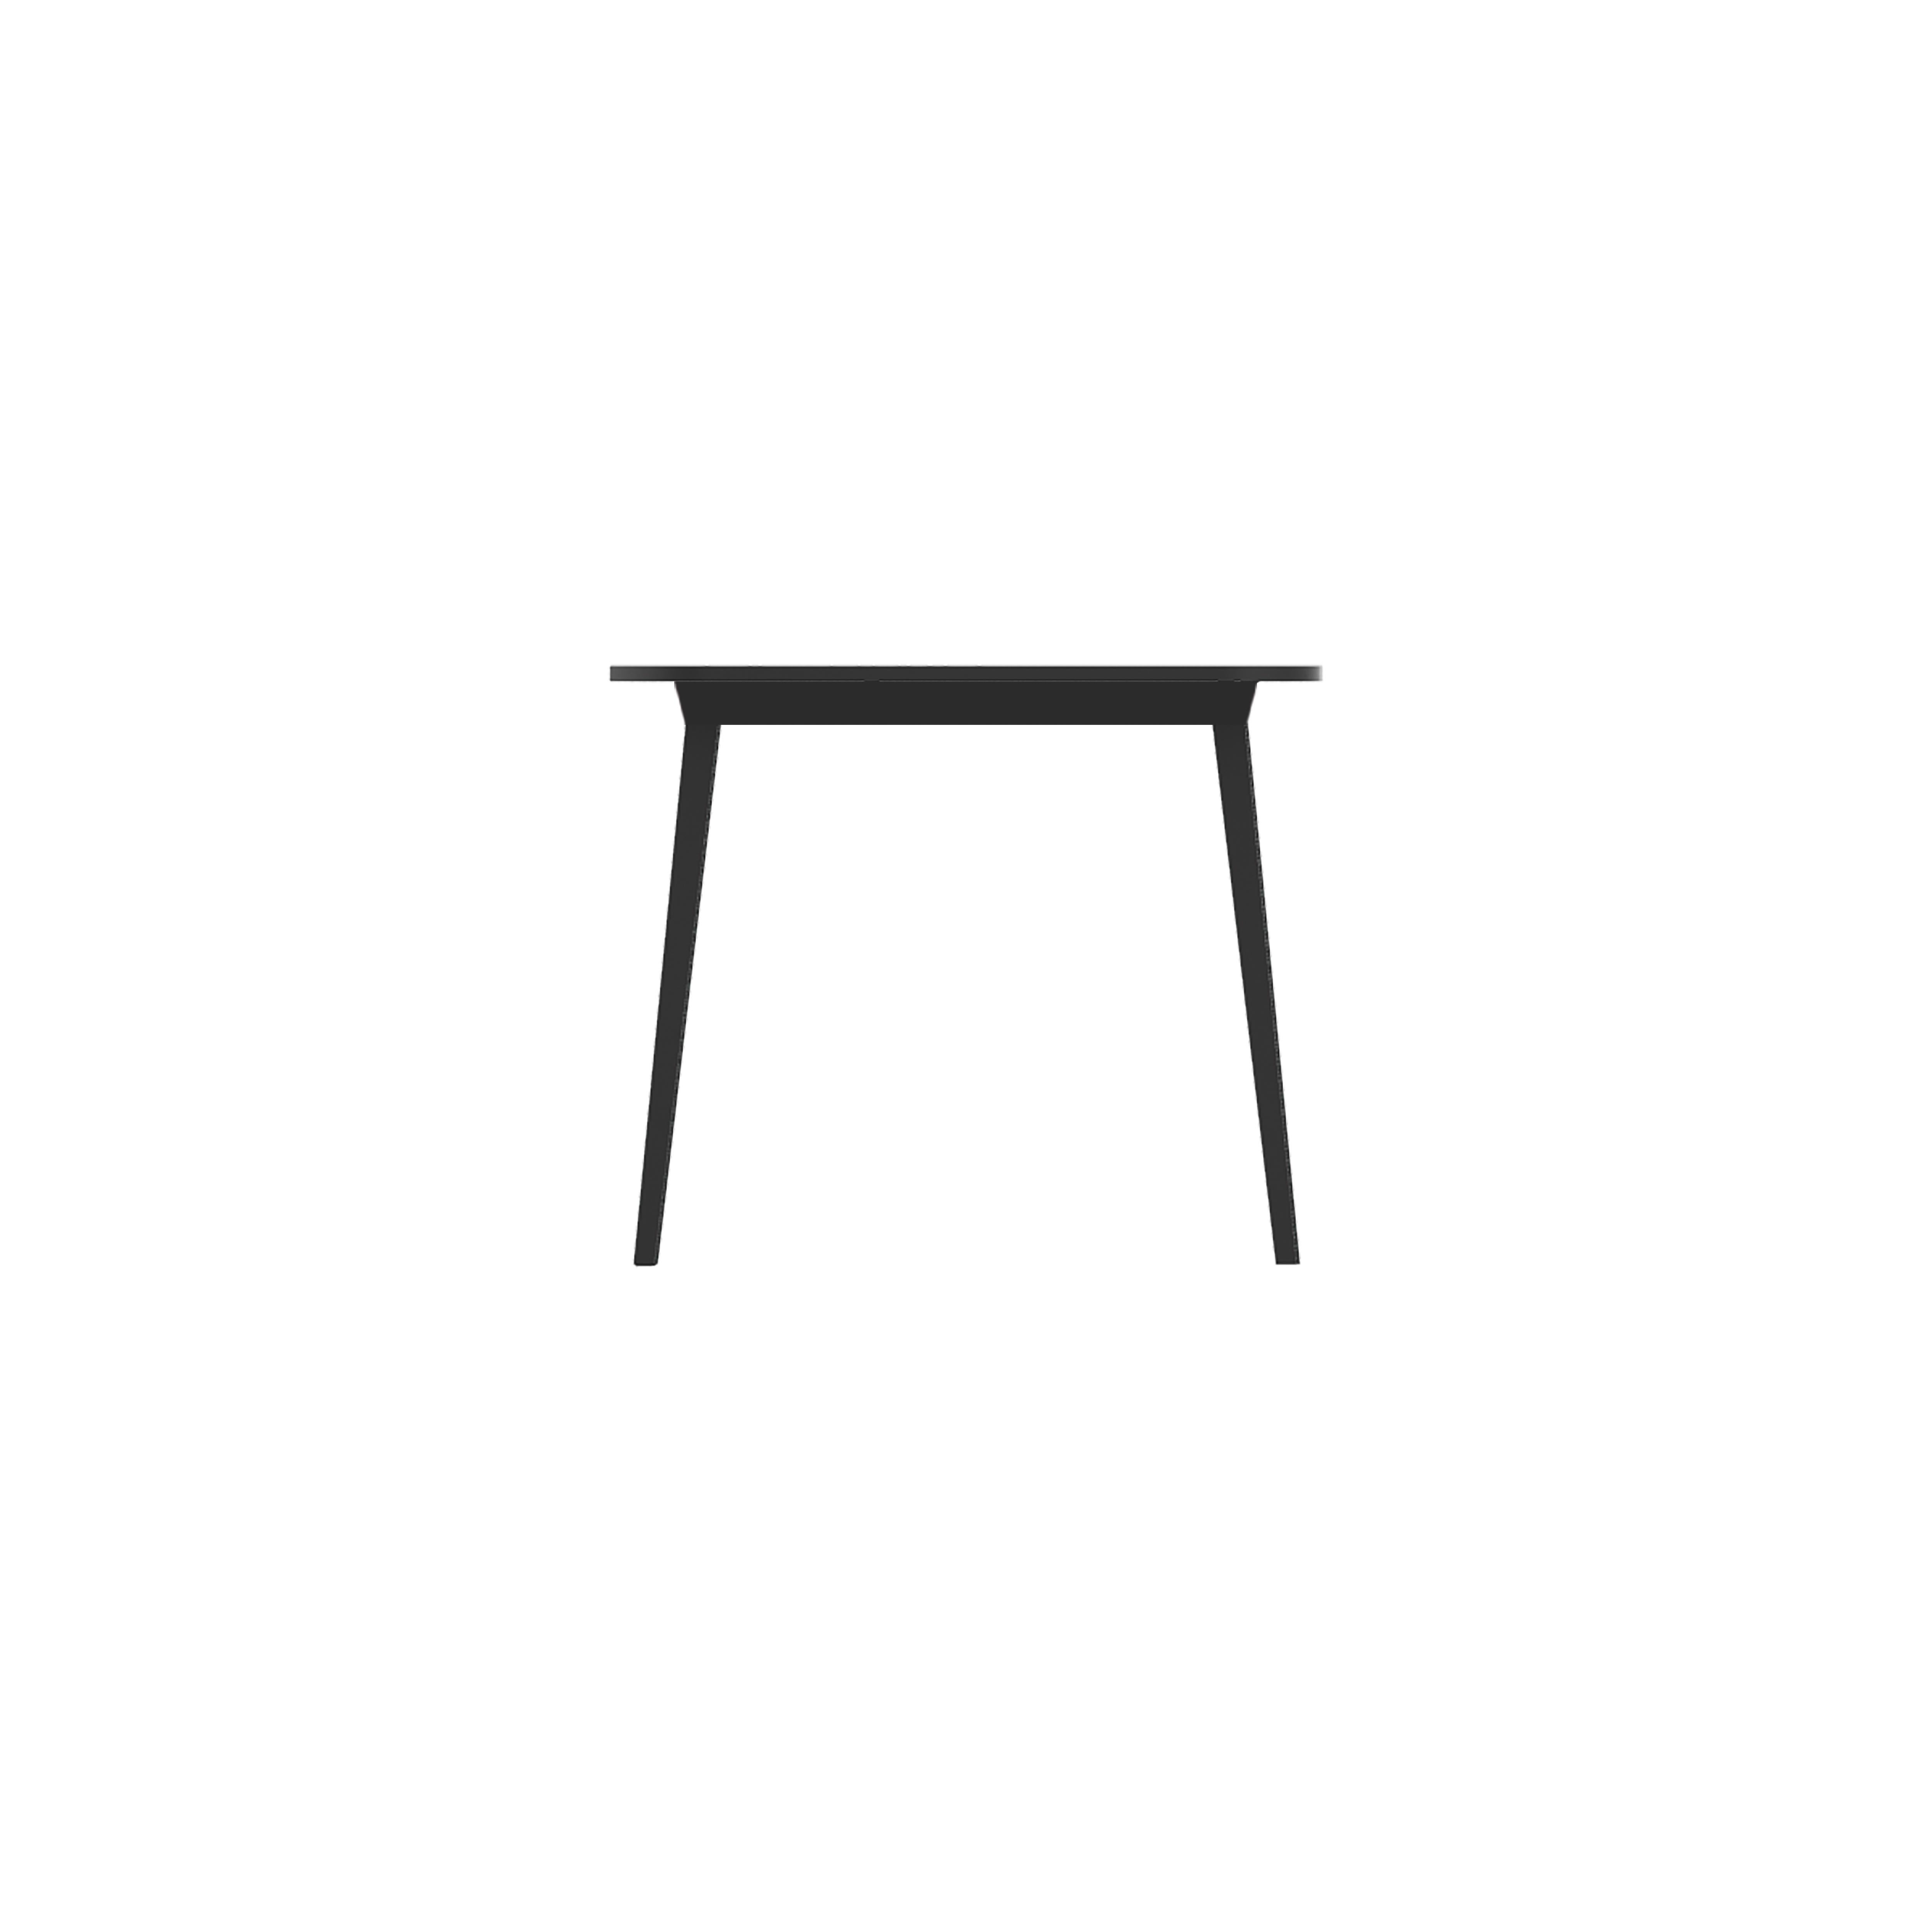 x' est une famille de tables de différentes tailles, composées d'une structure extensible en aluminium avec un plateau en bois ou d'un matériau unique en plastique noir. La table carrée à quatre places, idéale pour les bars et les